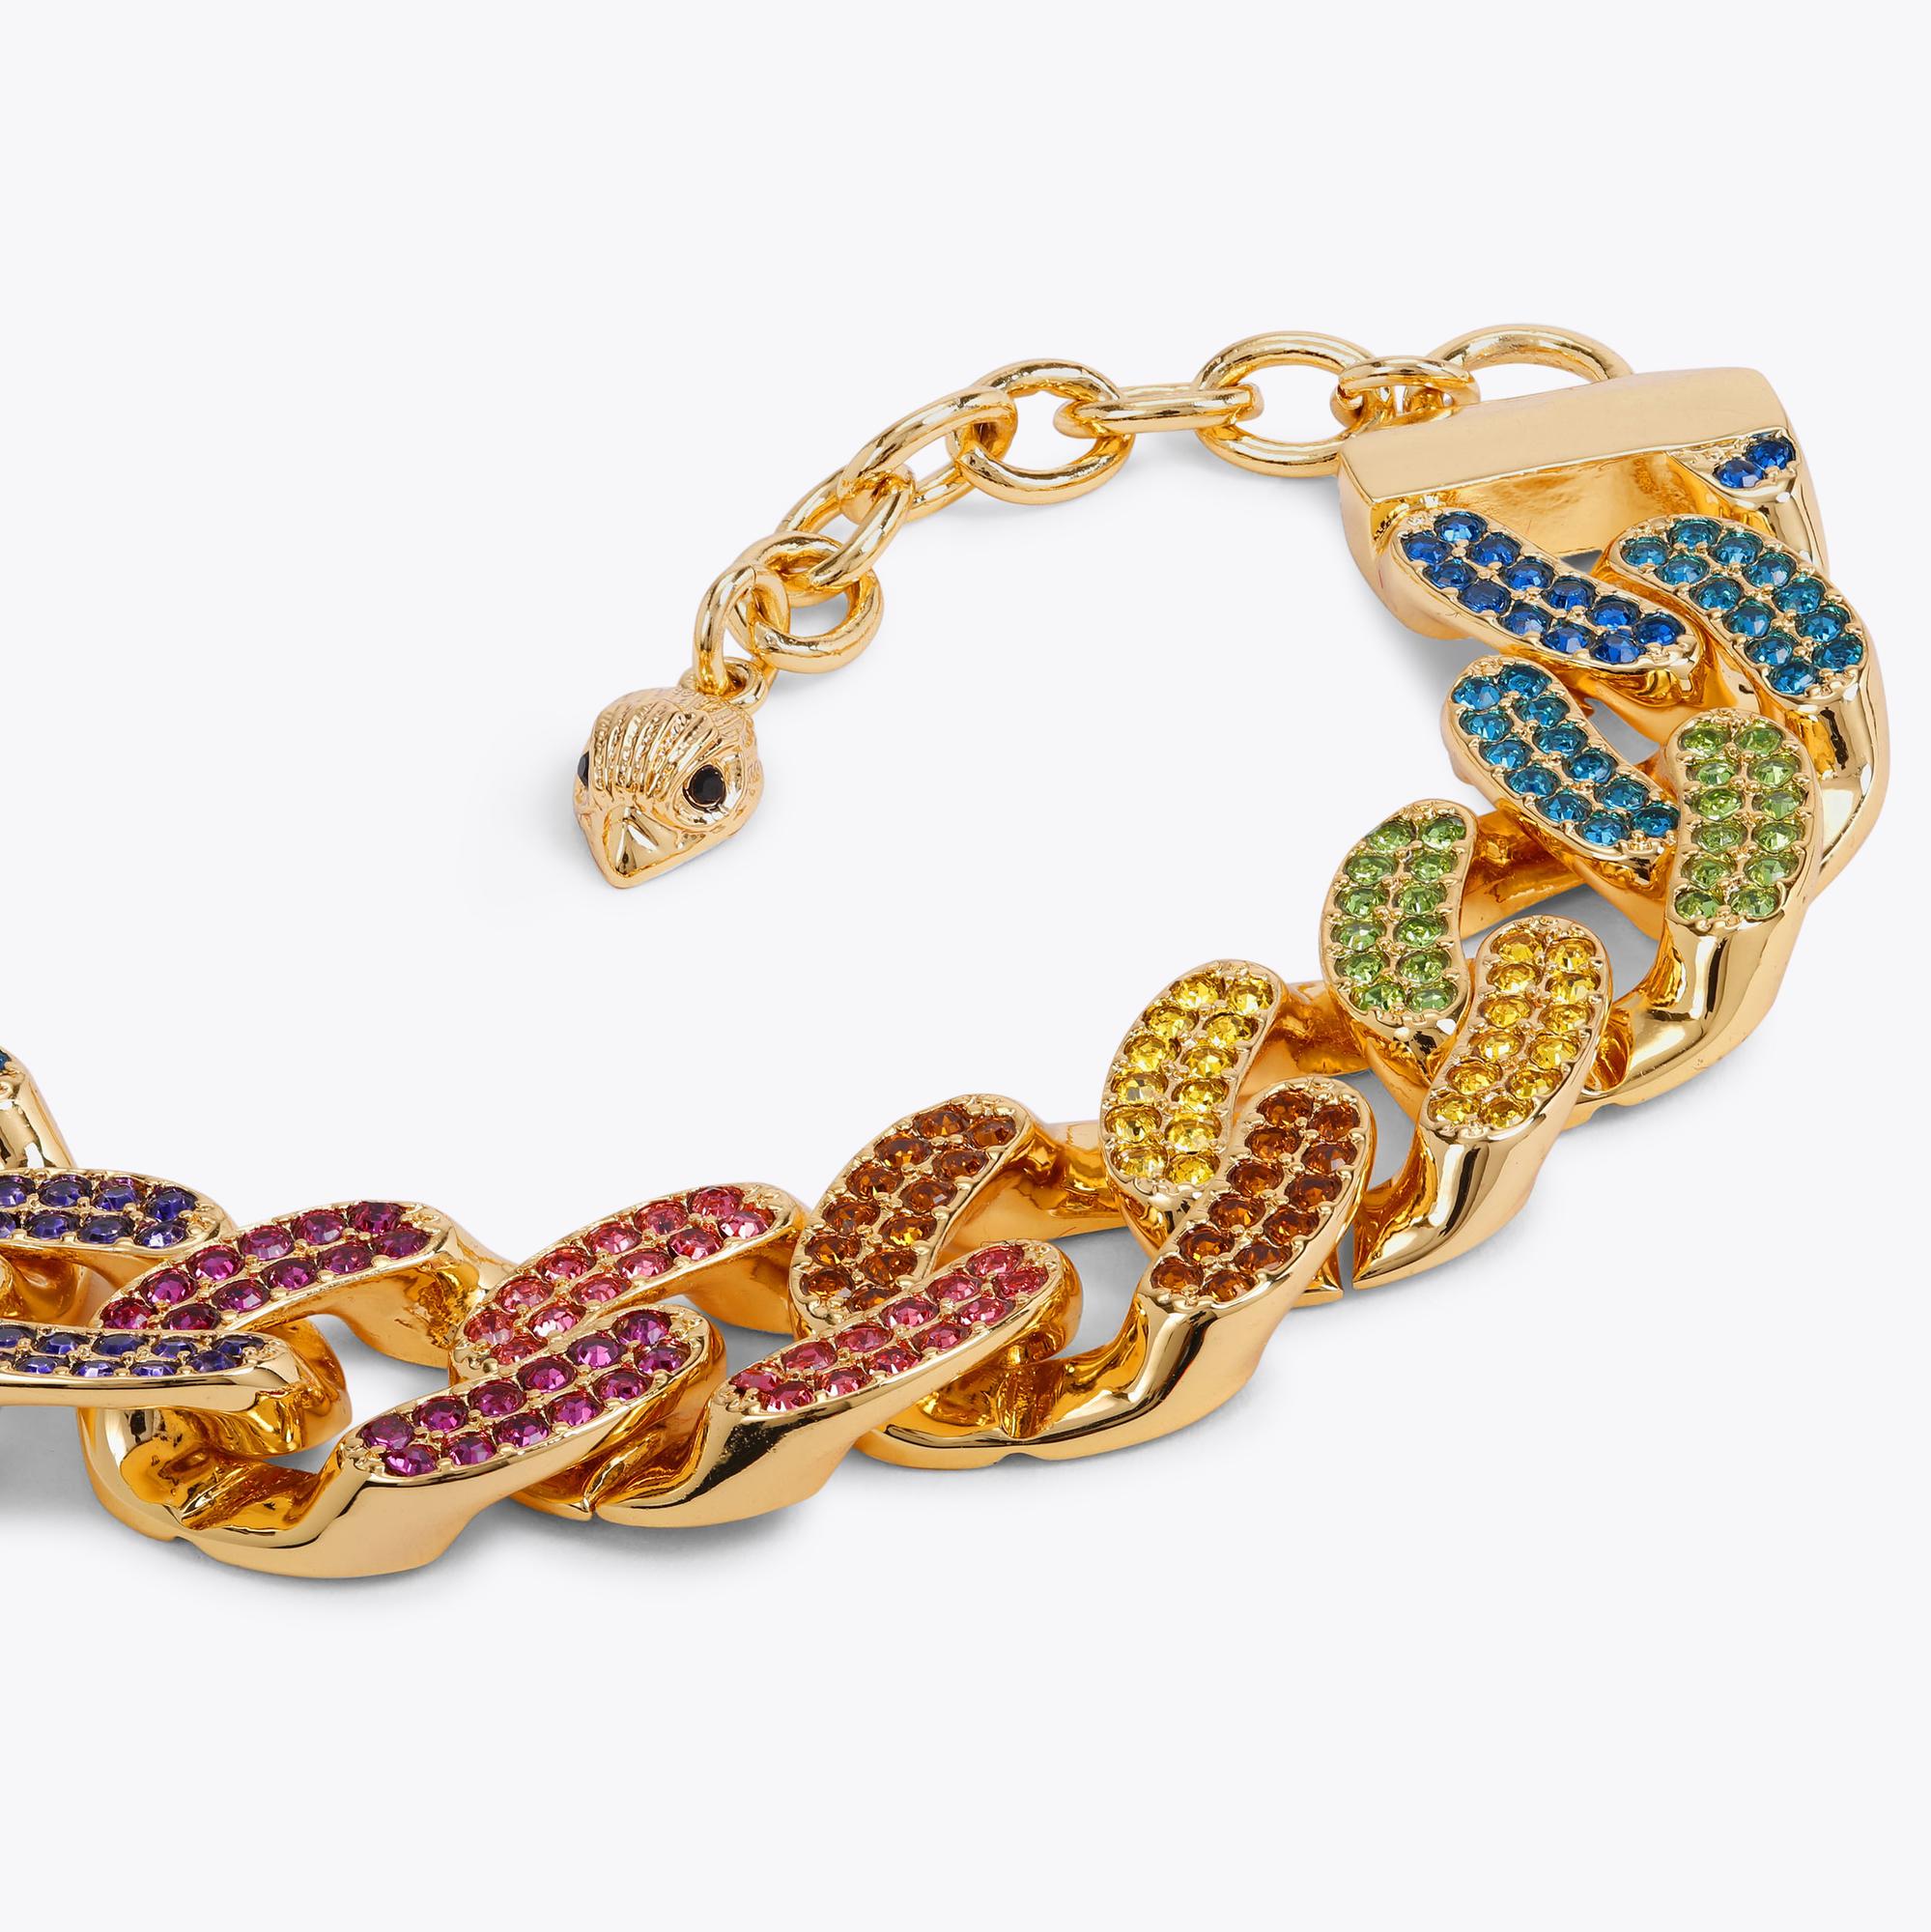 Kurt Geiger London Rainbow Pavé Paper Clip Chain Necklace